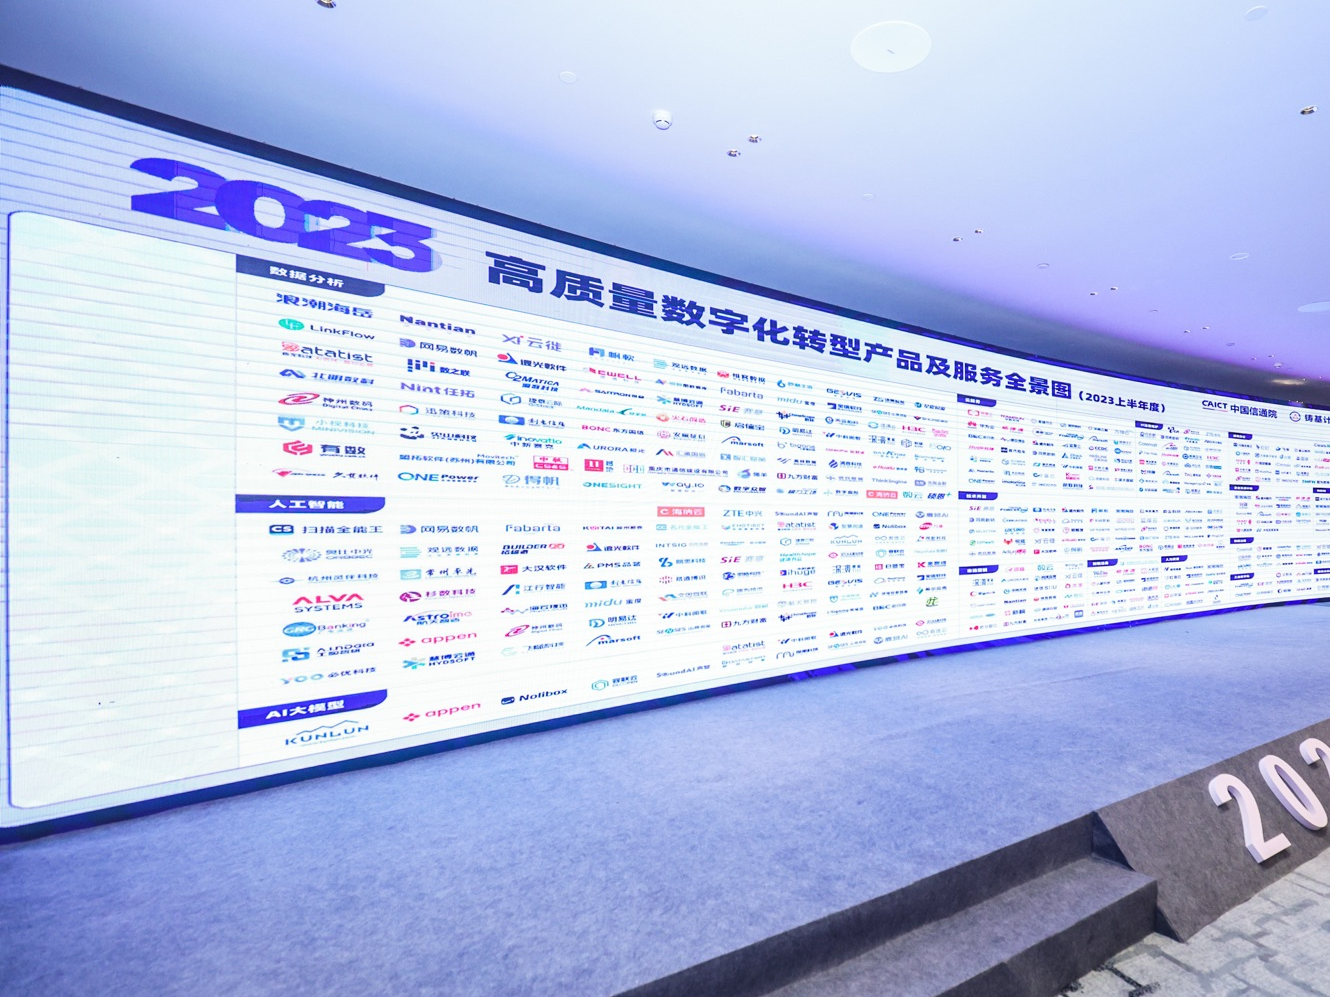 中國信通院權威認證，小魚易連入選高質量數字化轉型產品及服務全景圖